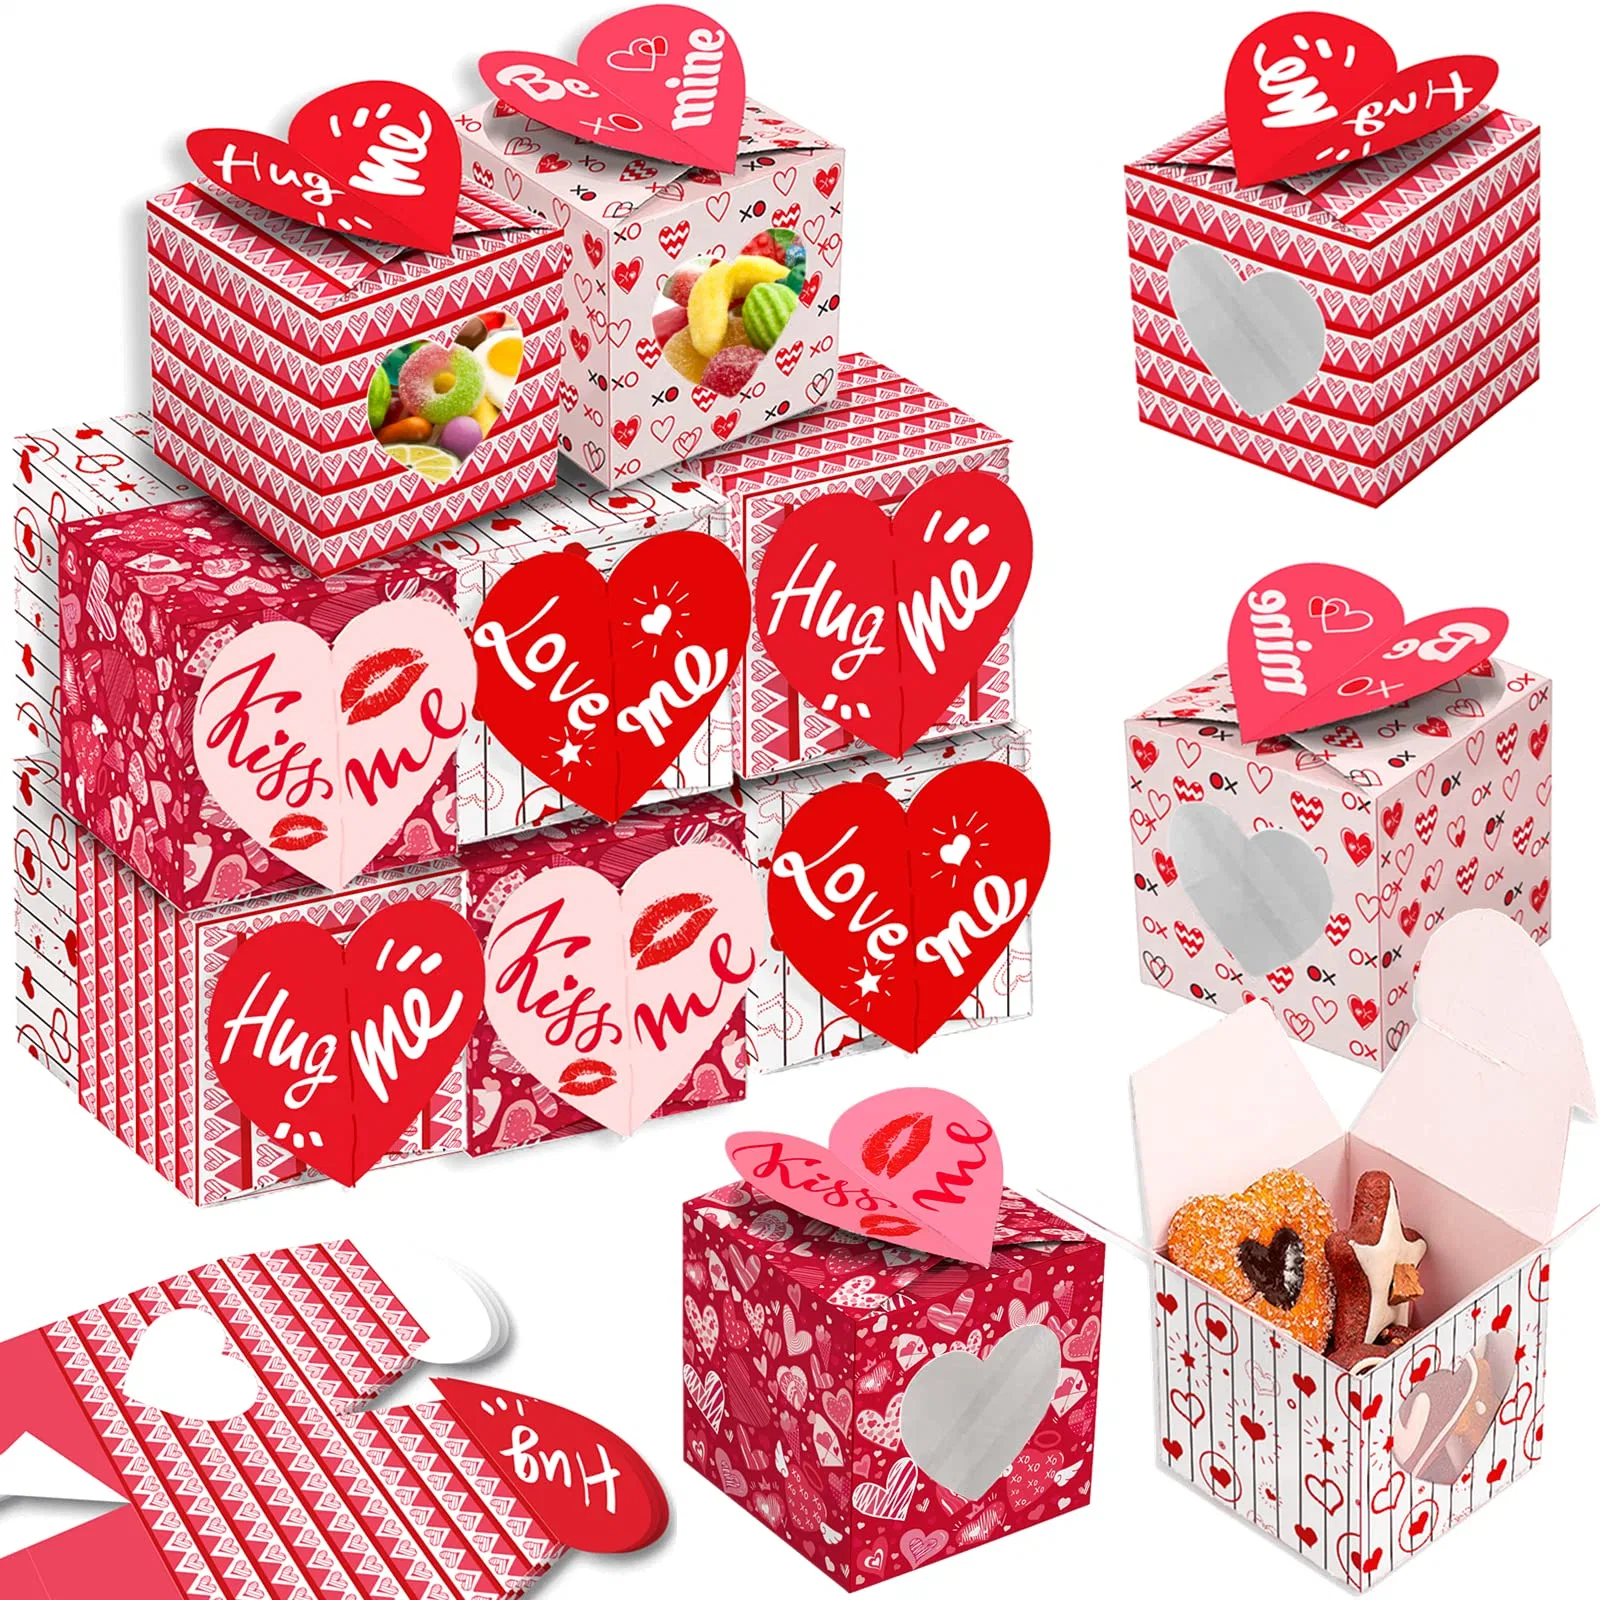 Festival Backwaren Boxen mit klarem Herz Form Fenster verwendet in Bäckerei bunte Dessert für Geschenk geben Liebe behandeln Box für Valentinstag Party Geschenk Verpackung